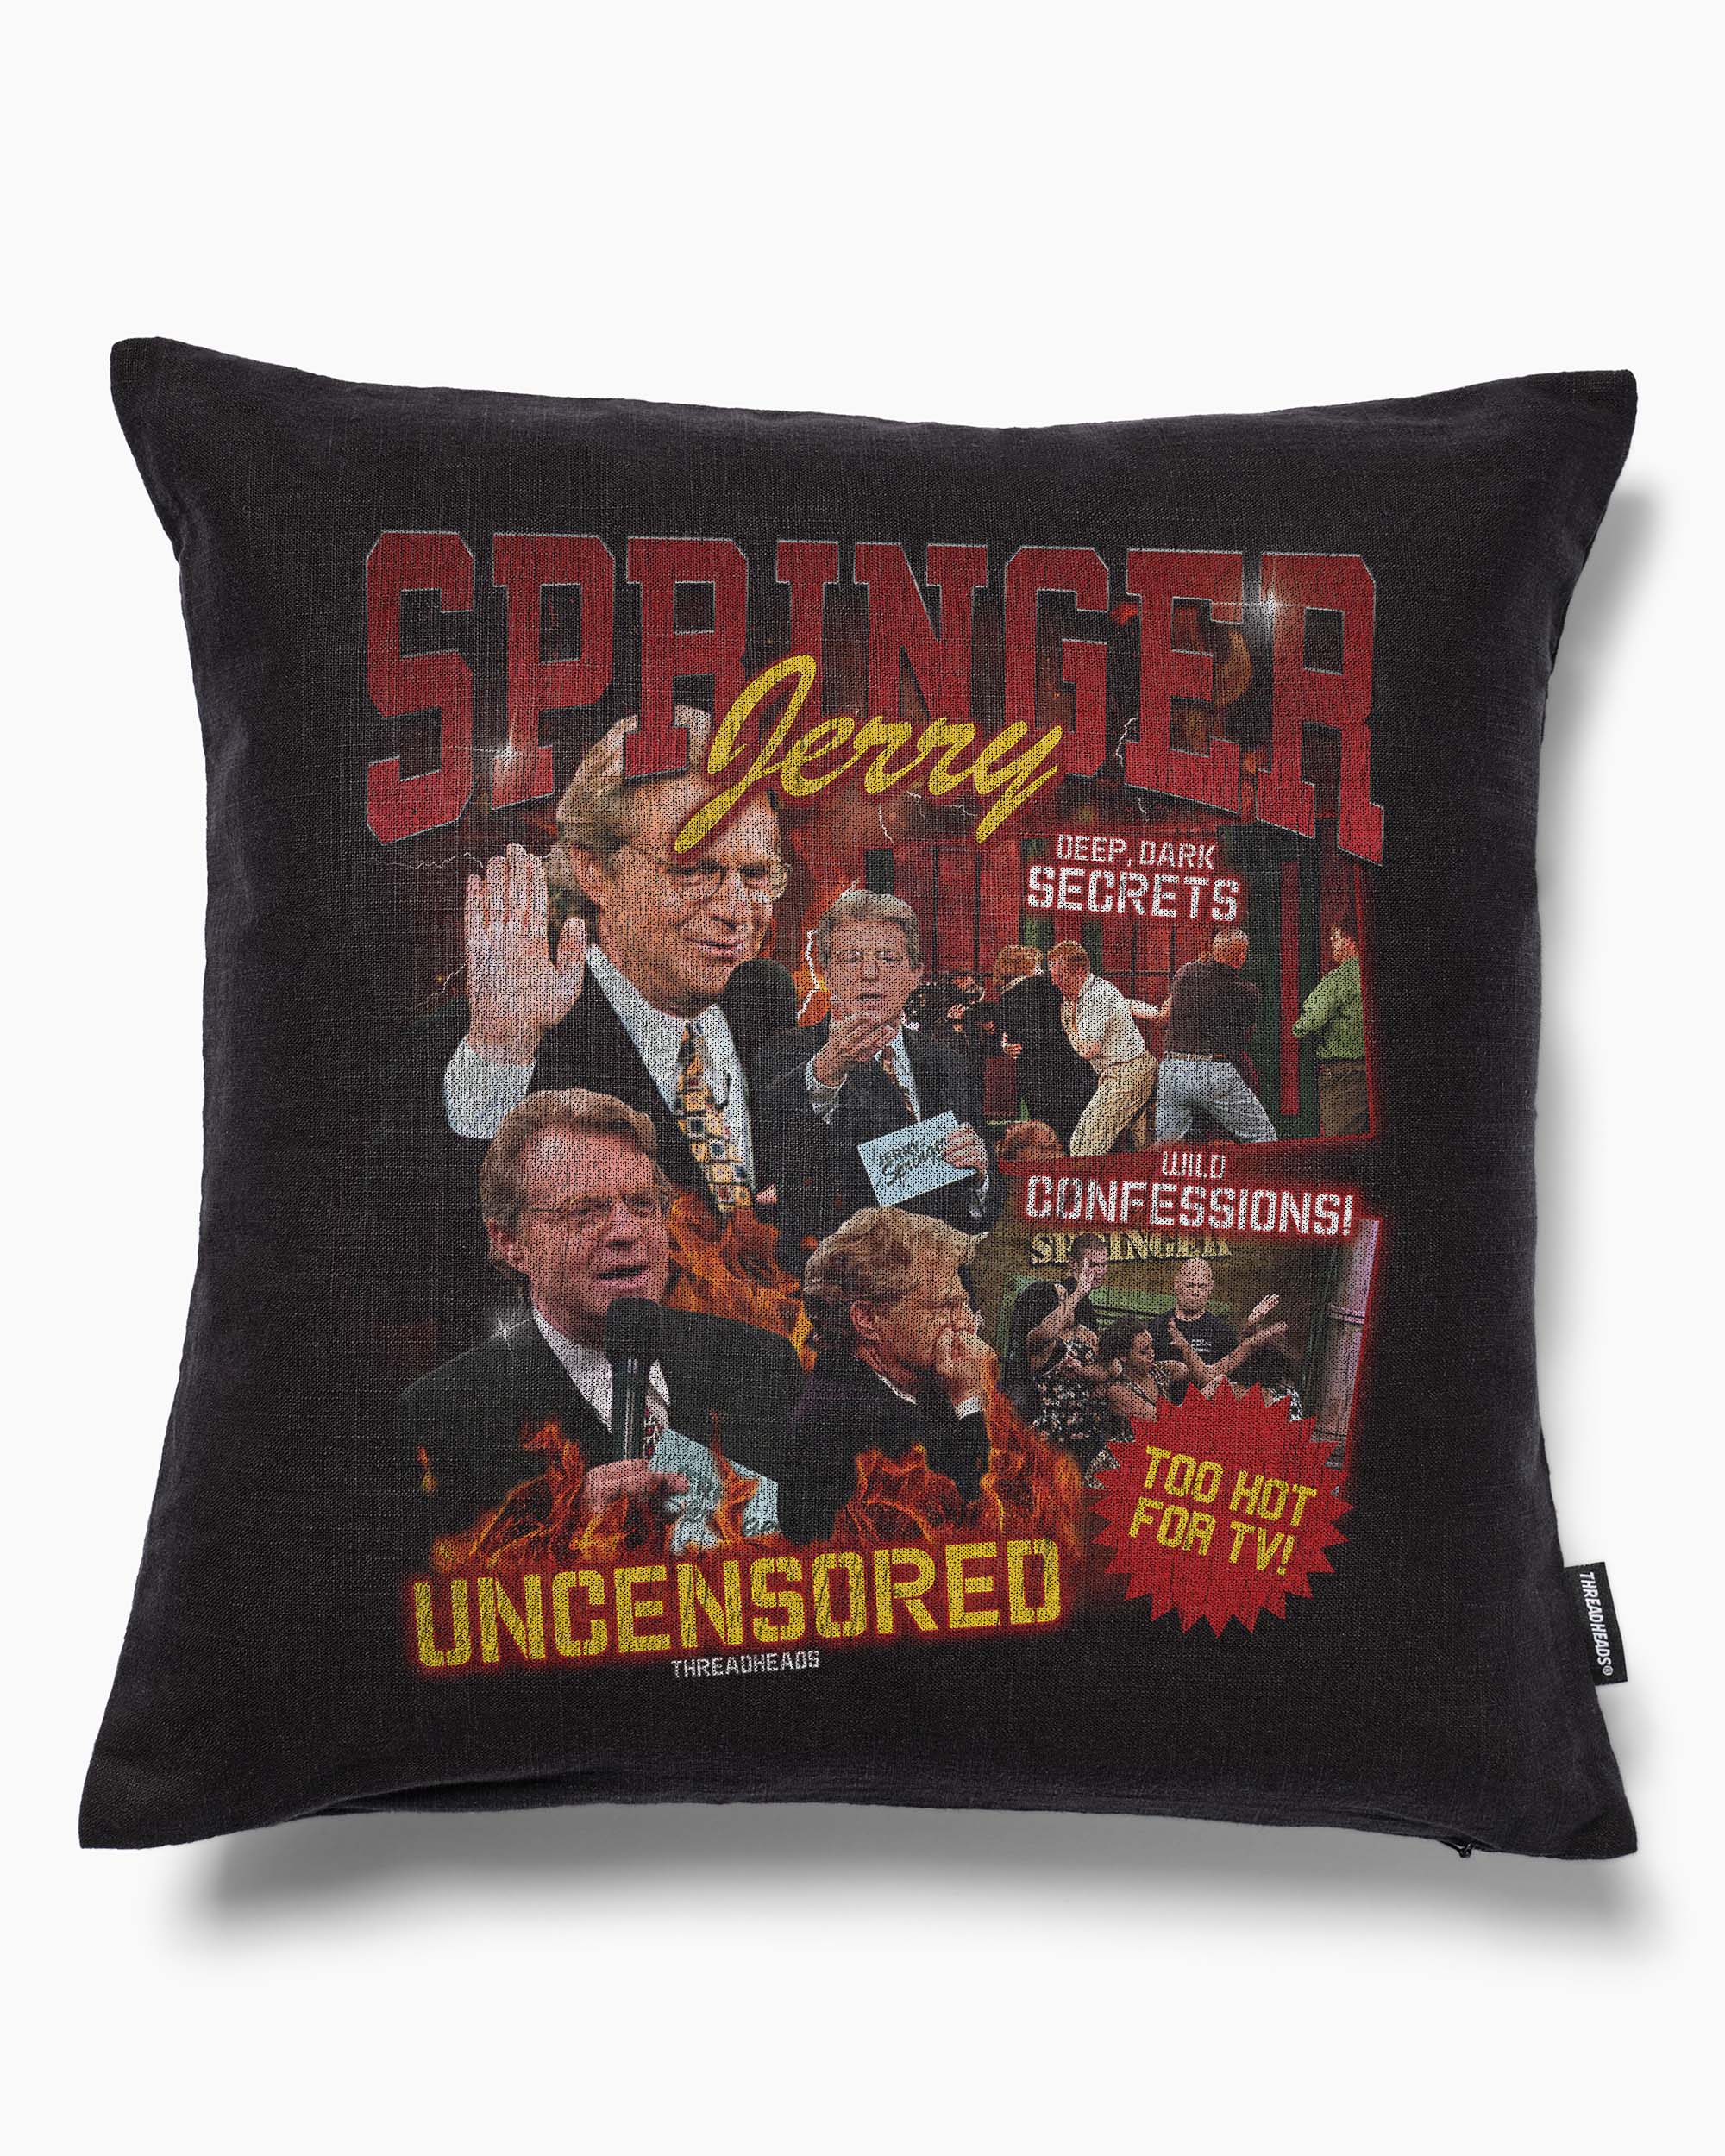 Vintage Jerry Springer Cushion